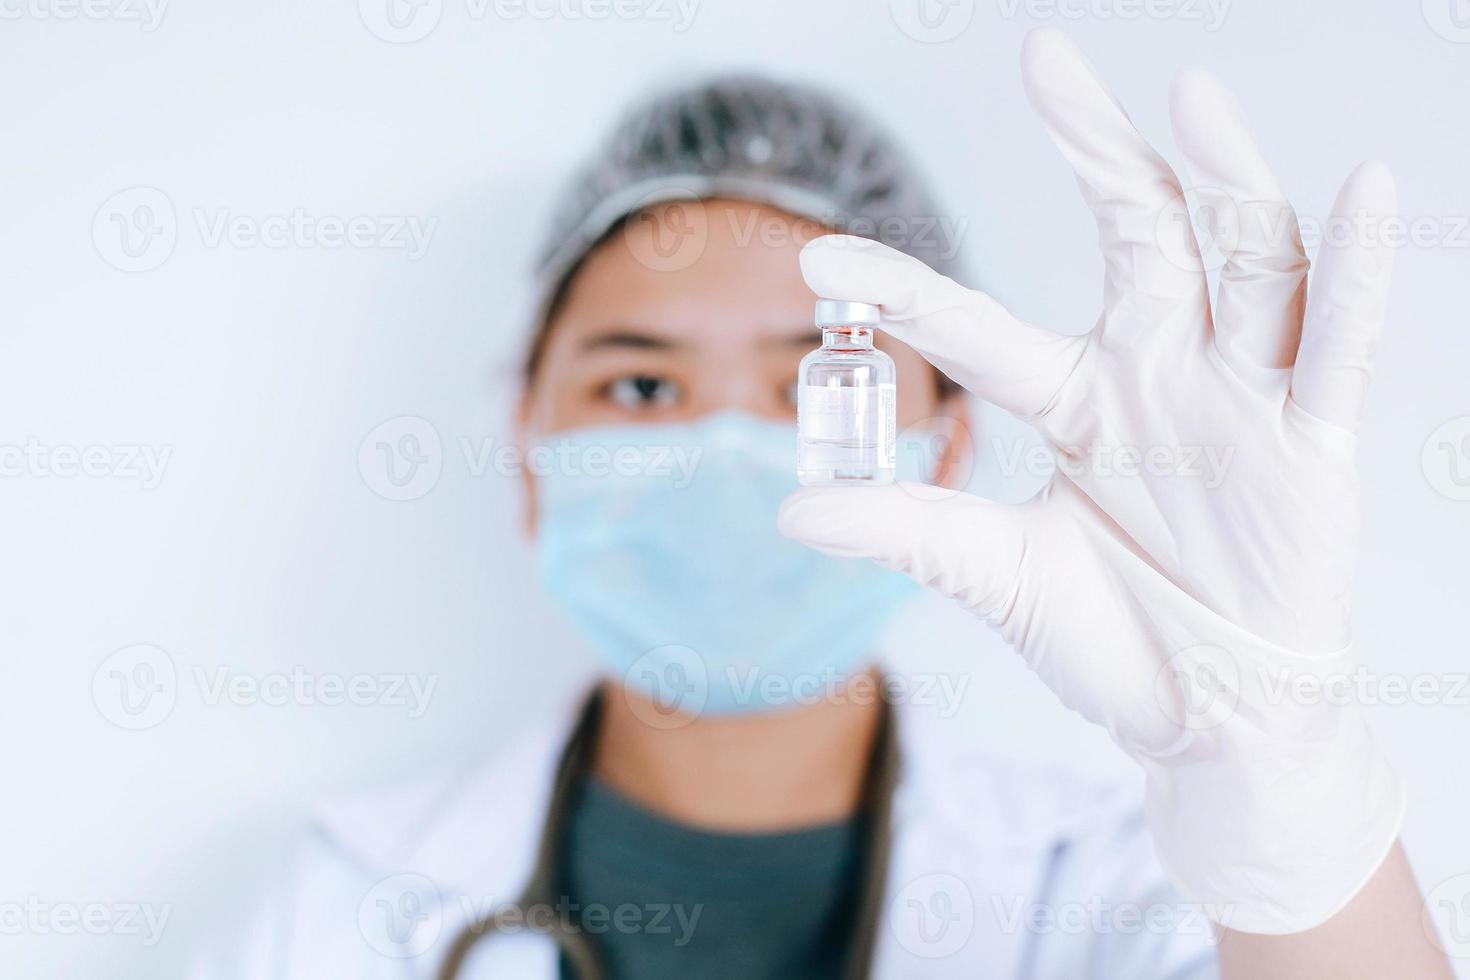 dottoressa o scienziata asiatica che indossa una maschera con una fiala di medicinale in mano su sfondo bianco. concetto di medicina, vaccinazione, immunizzazione e assistenza sanitaria foto